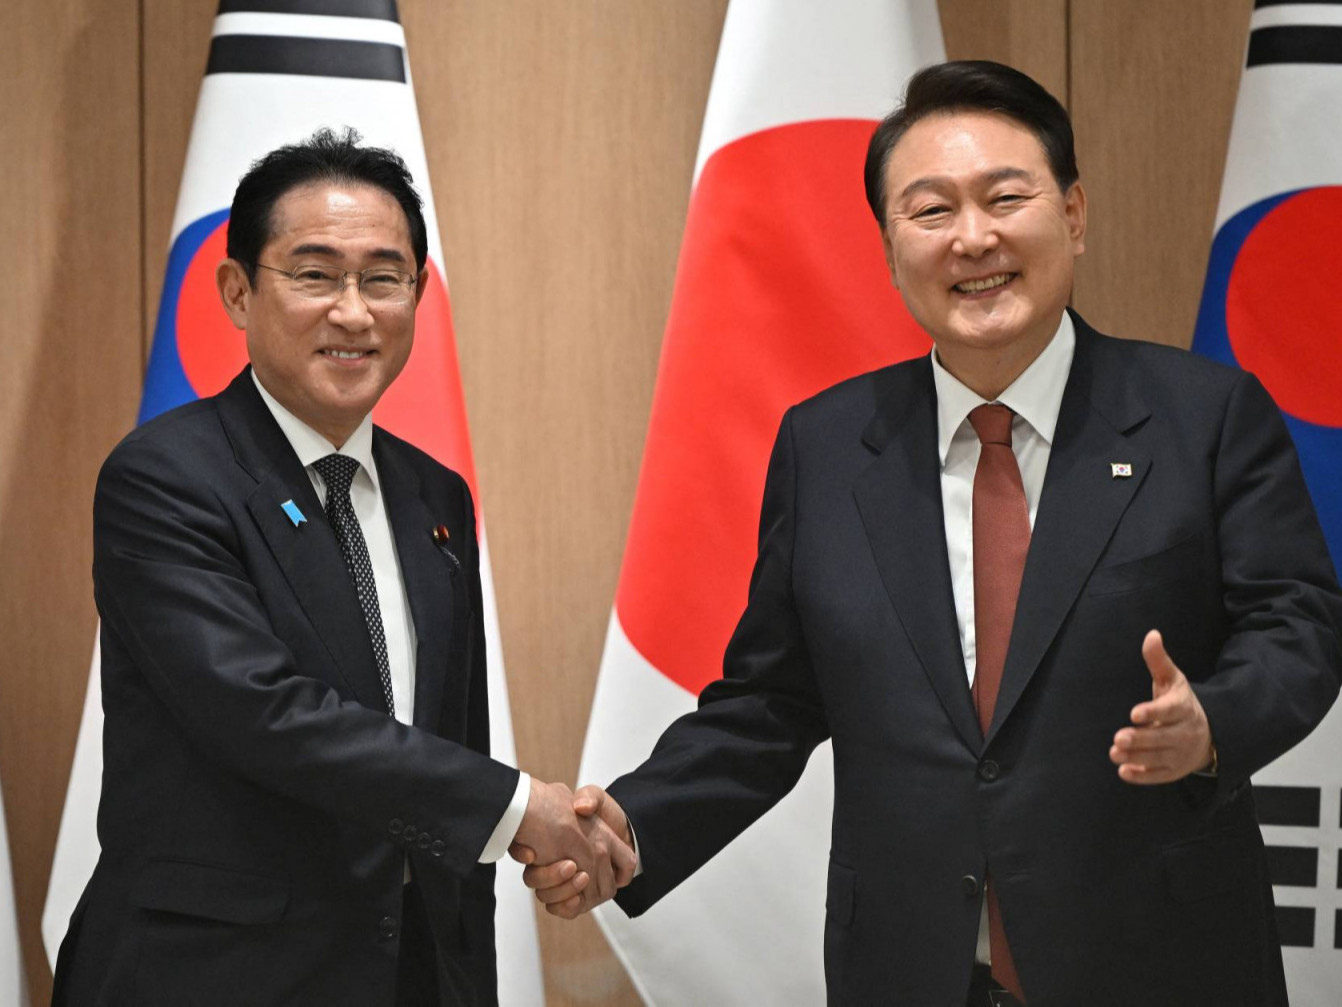 Япон, БНСУ-ын удирдагчид аюулгүй байдлын асуудлаар хамтран ажиллана гэдгээ нотоллоо